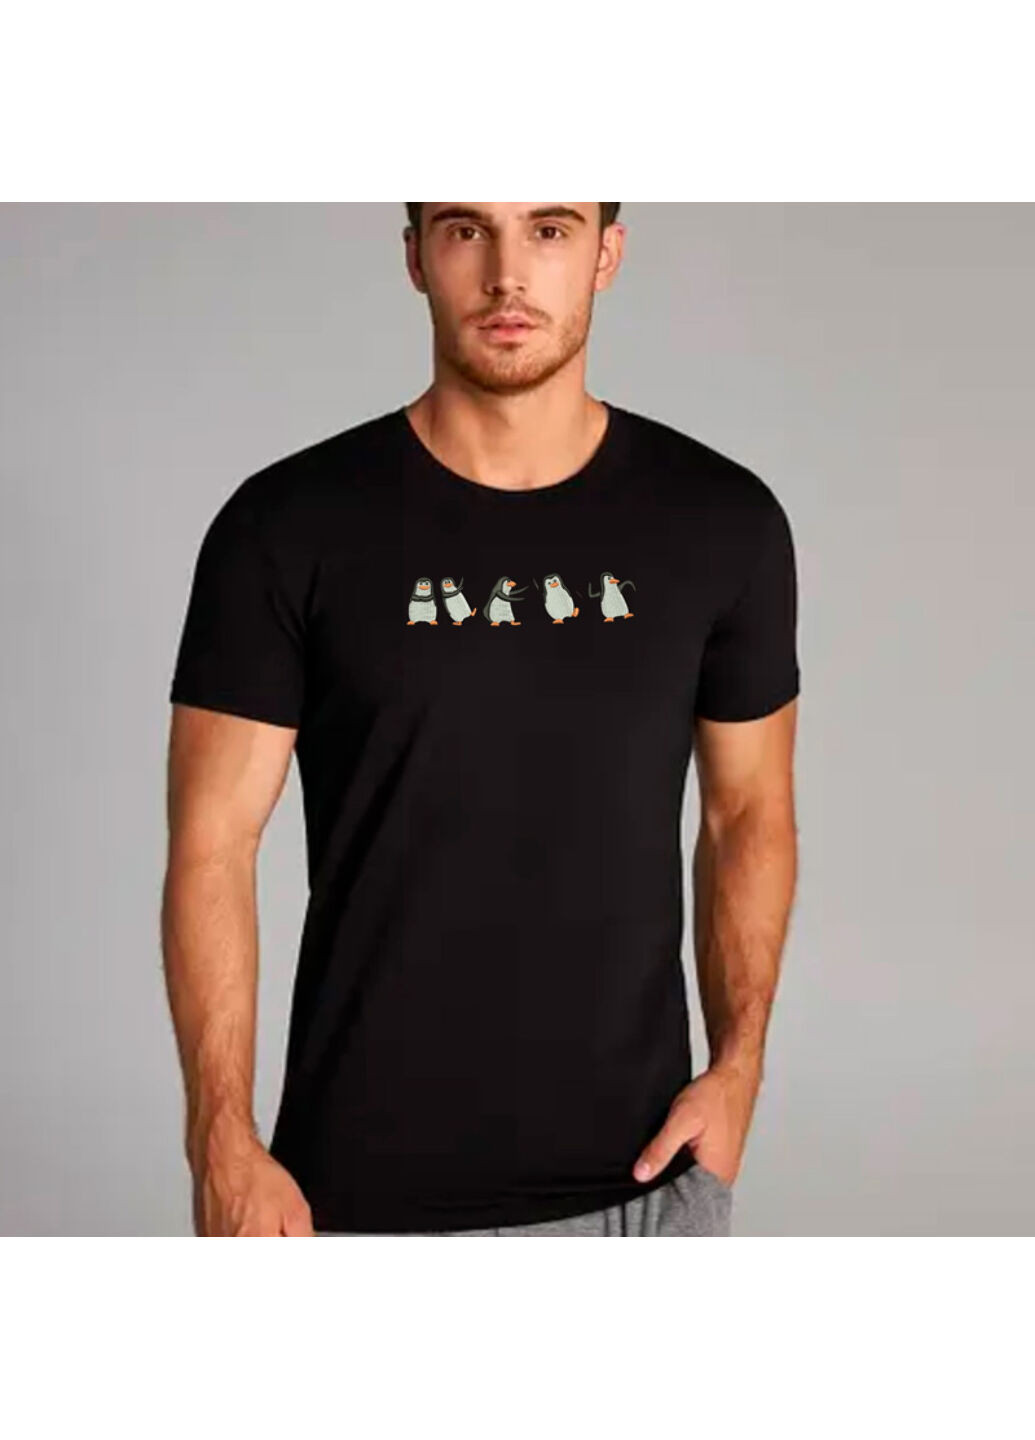 Чорна футболка з вишивкою пінгвінів 01-2 чоловіча чорний s No Brand